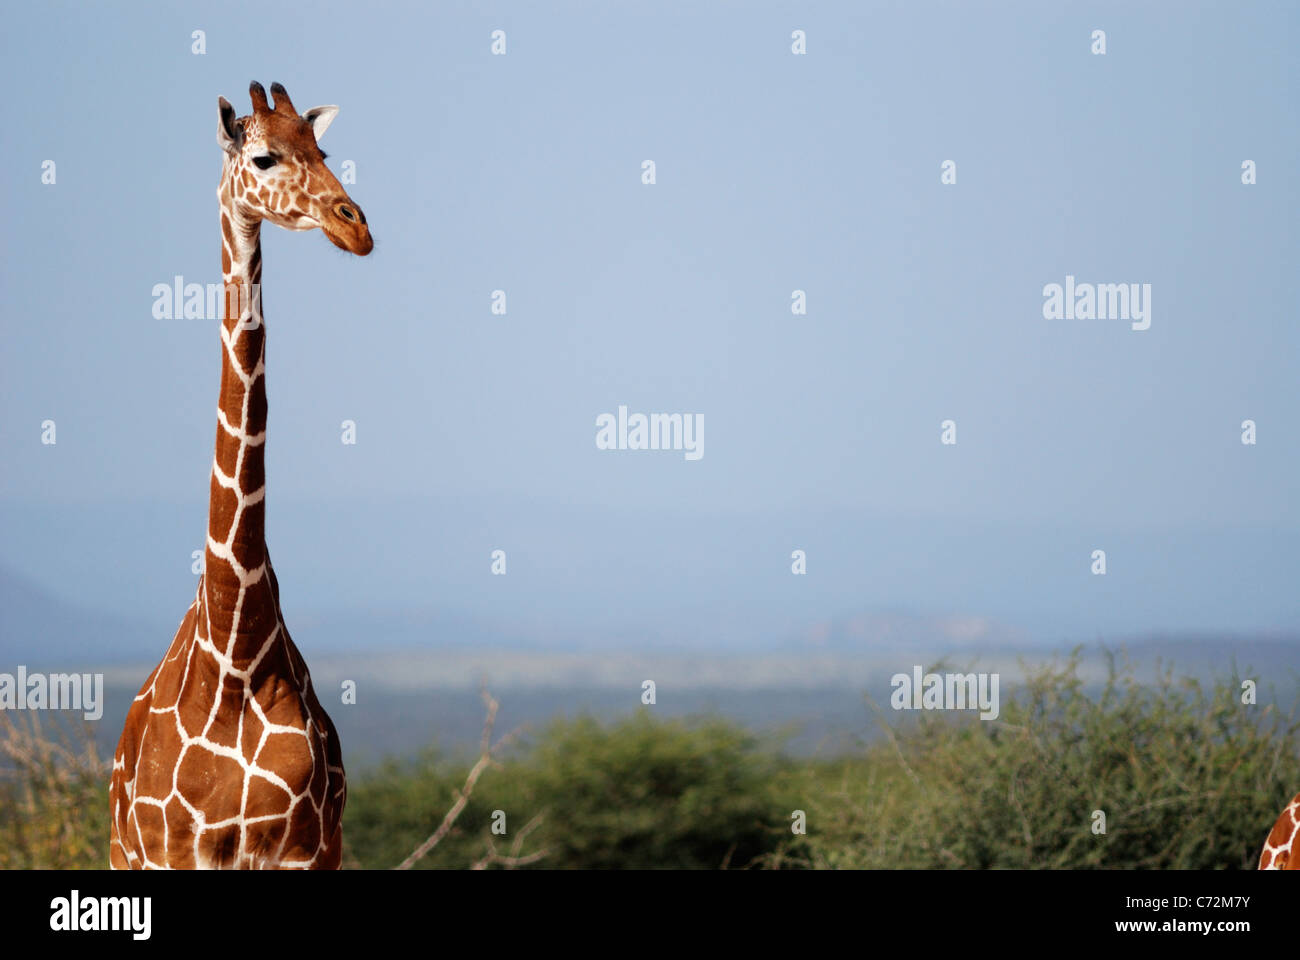 Giraffe (Giraffa camelopardalis) Stock Photo